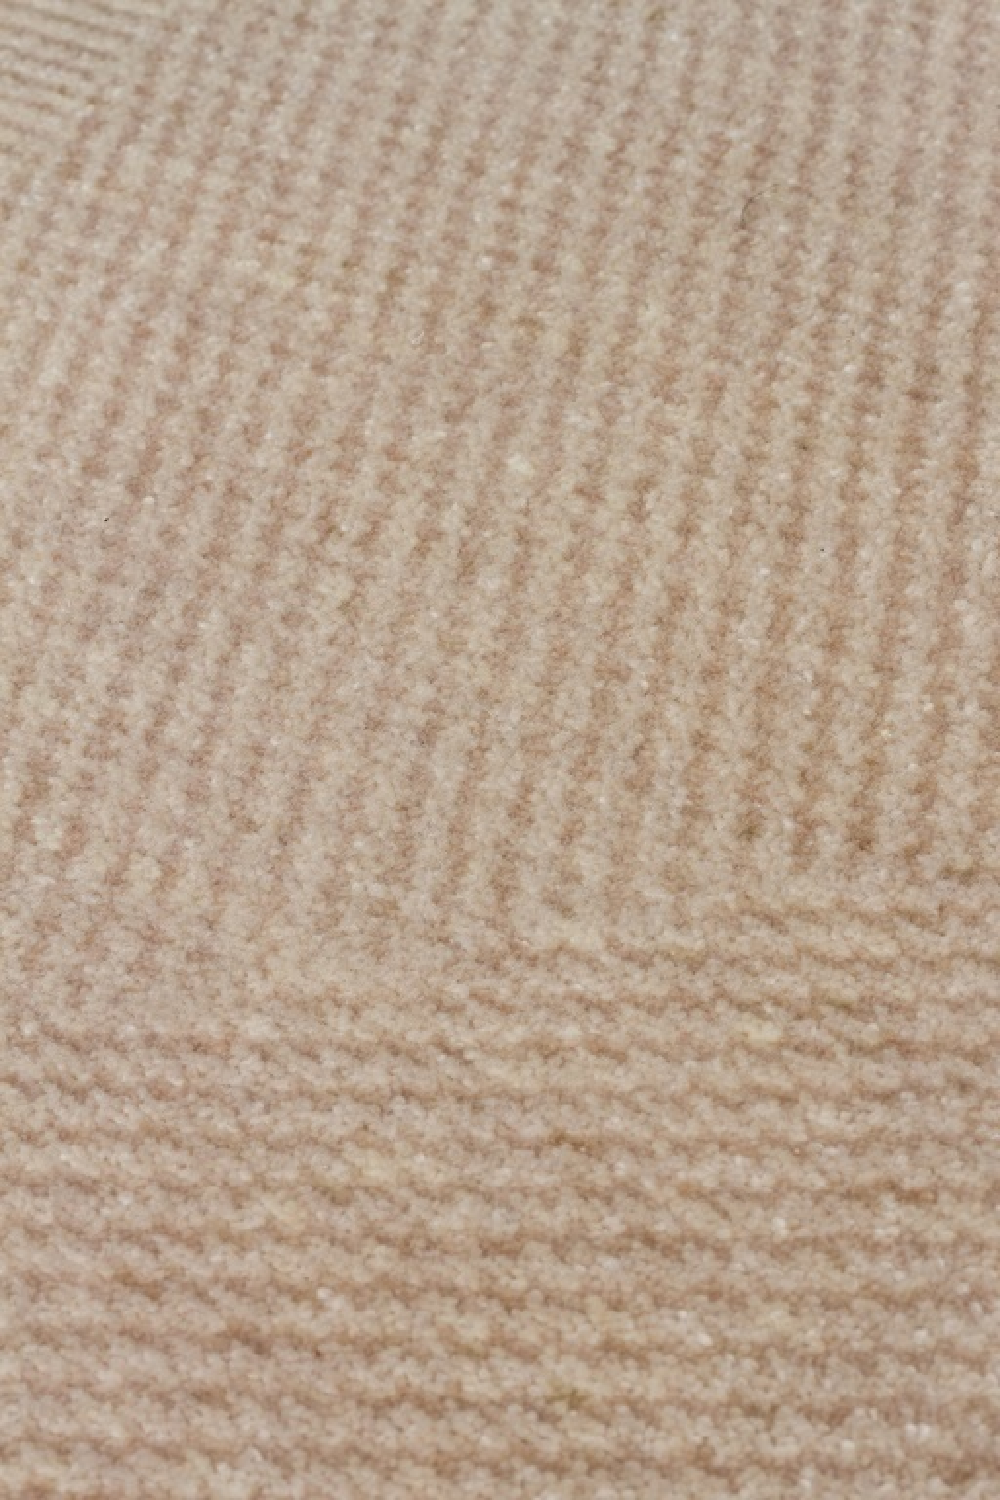 Beige Viscose Carpet 6'5" x 10' | OROA Beniz | Oroa.com